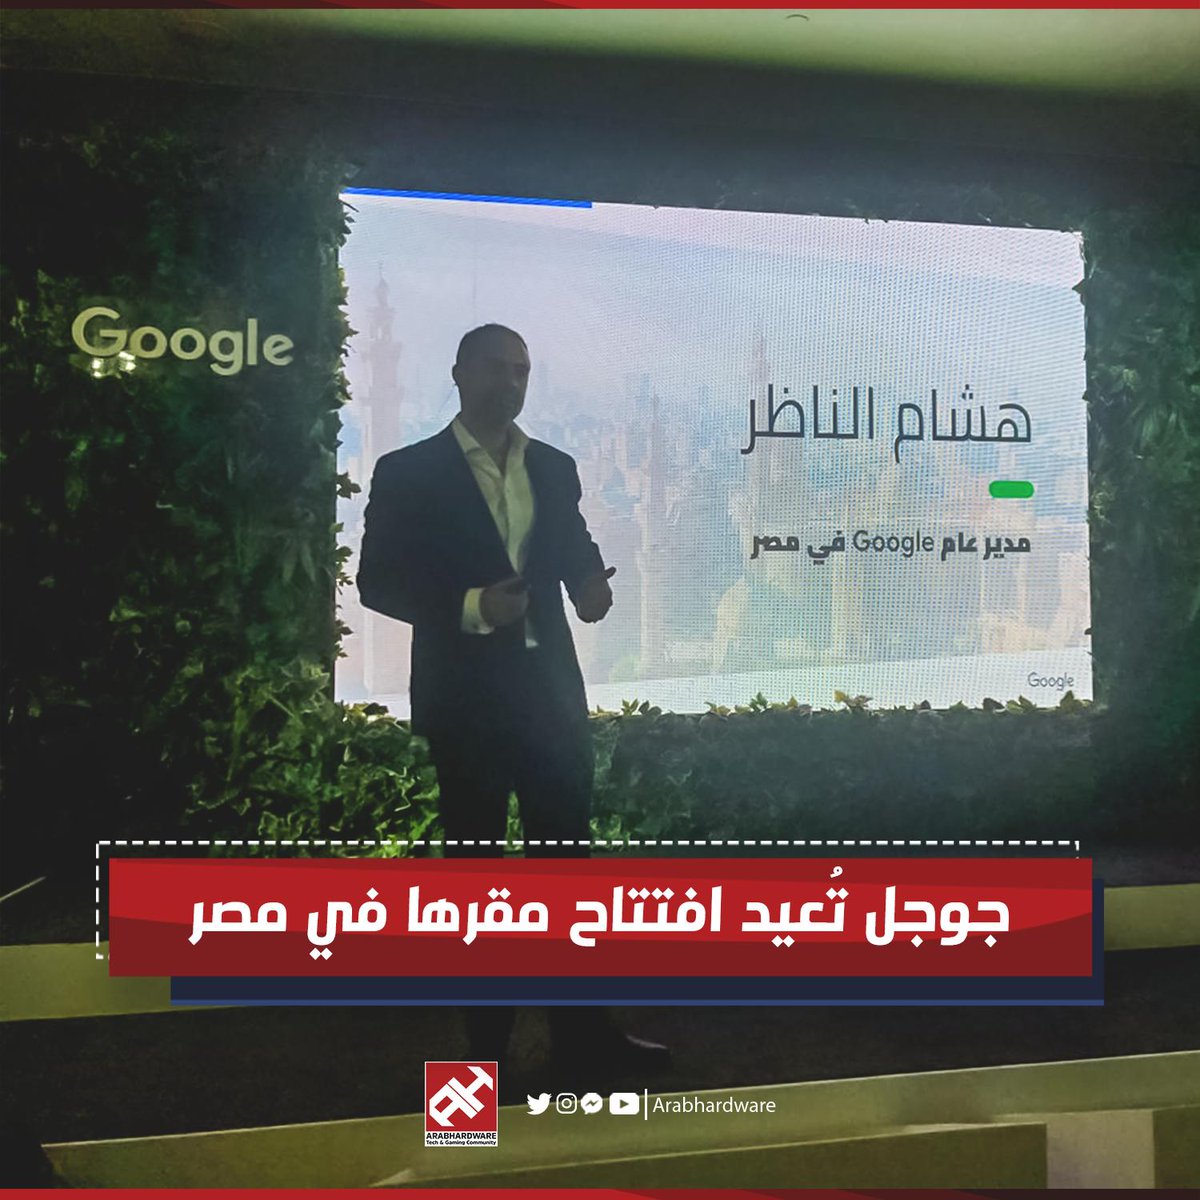 شركة جوجل مصر